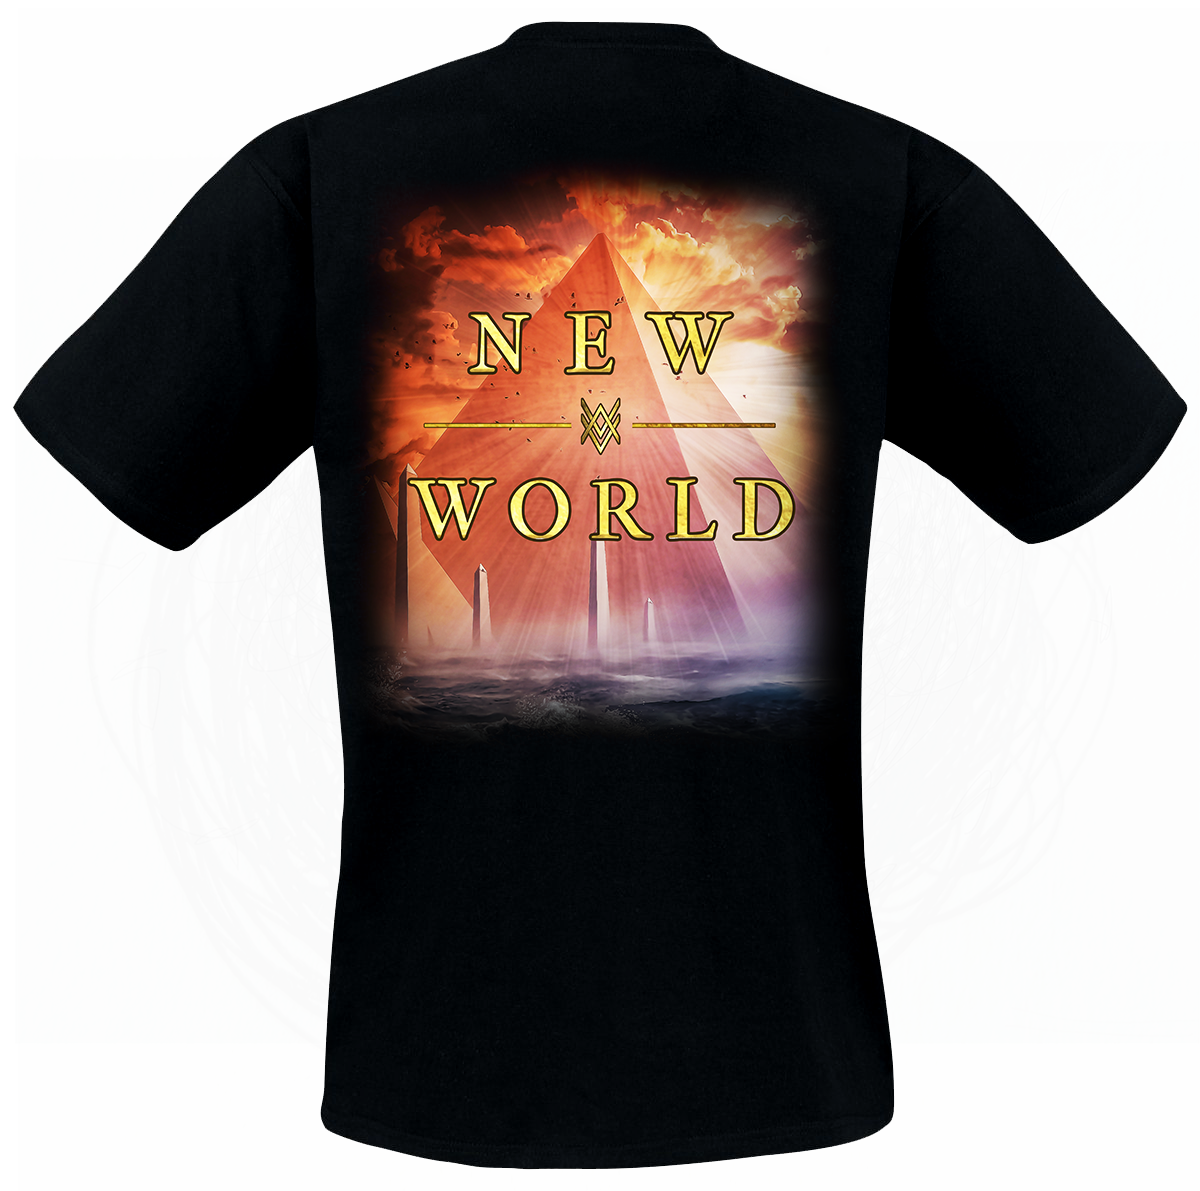 New World (T-Shirt)